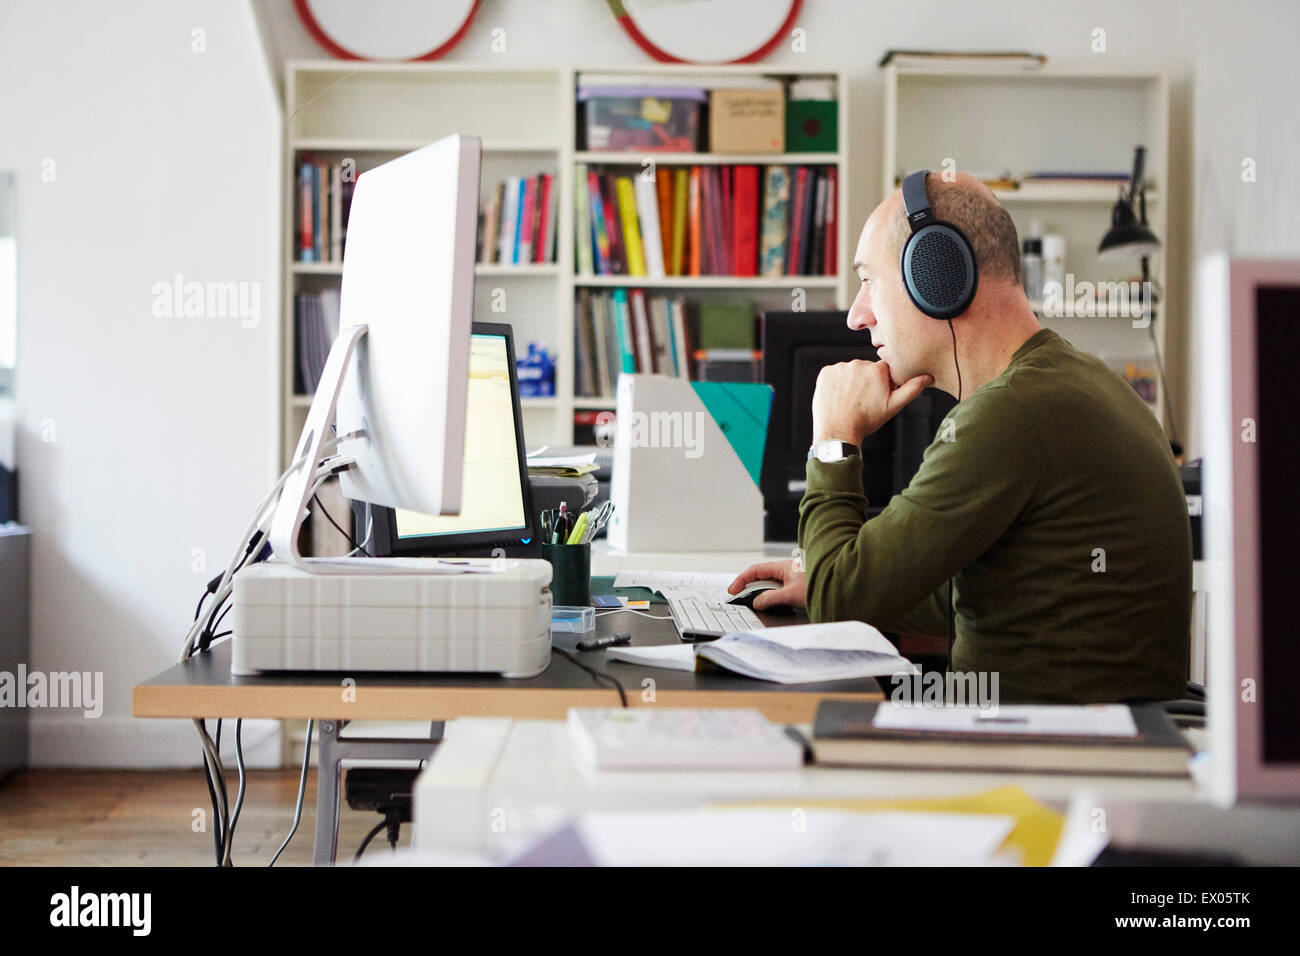 Hombre maduro trabajan en creative studio usando audífonos Foto de stock